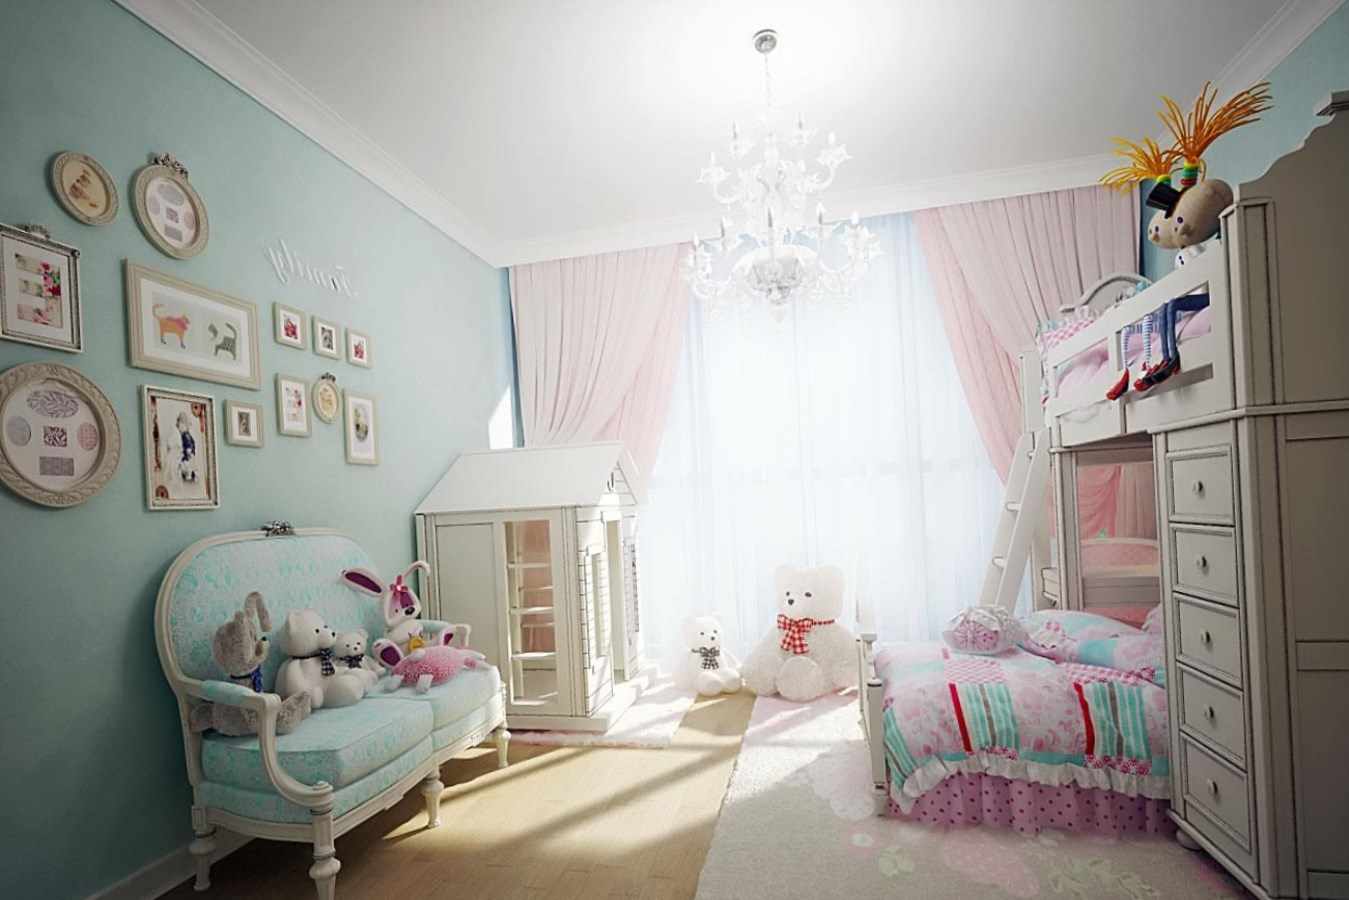 فكرة تصميم جميل لغرفة نوم لفتاة